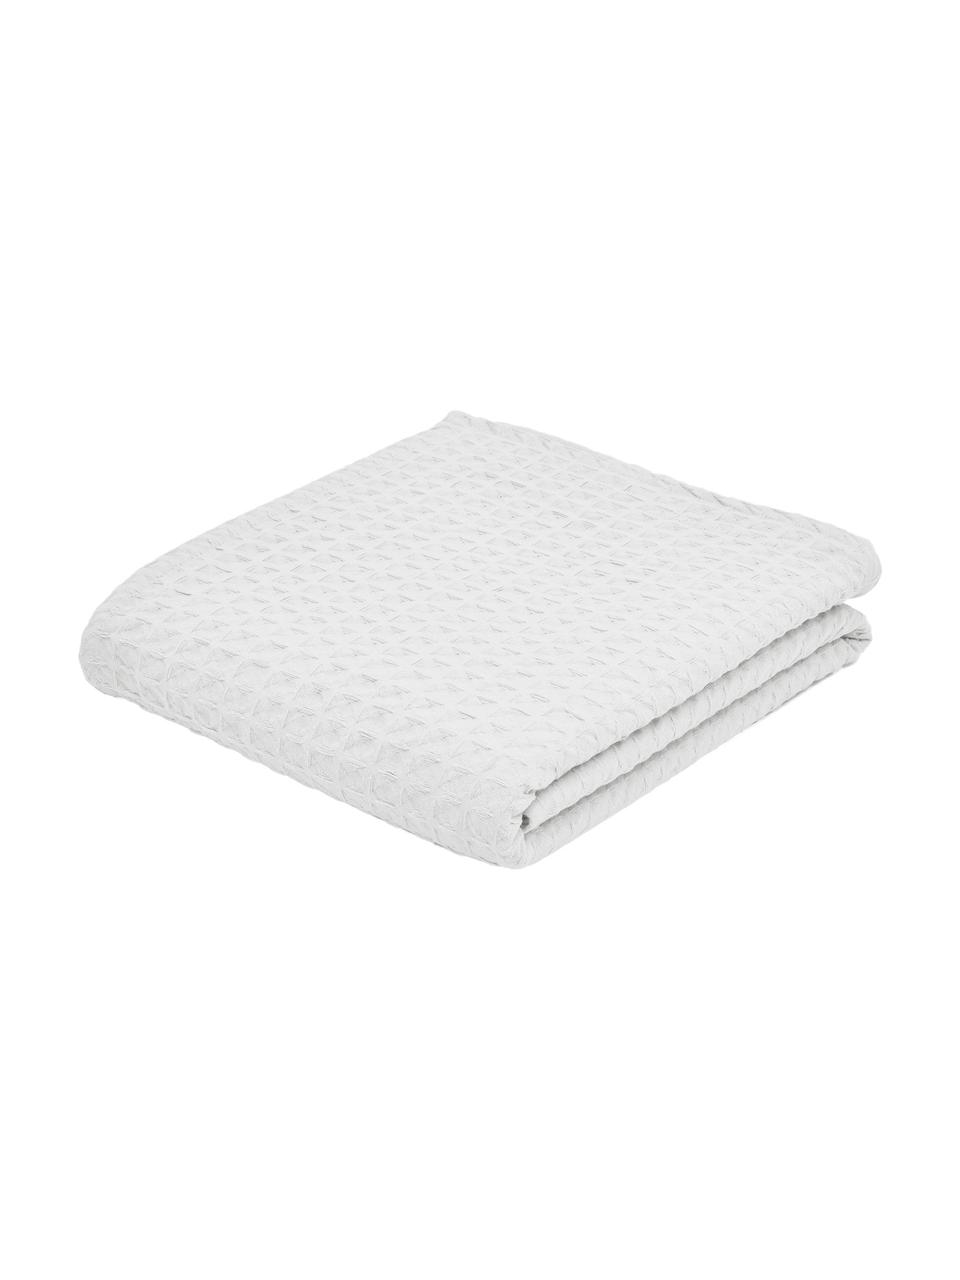 Wafelpiqué bedsprei Panal in wit, 100% katoen, Wit, B 180 x L 260 cm (voor bedden tot 140 x 200)